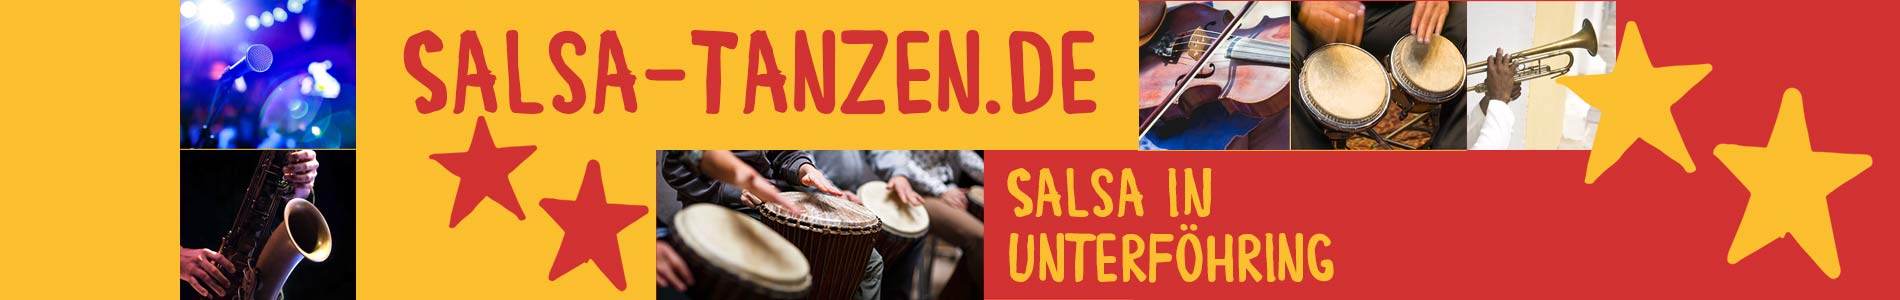 Salsa in Unterföhring – Salsa lernen und tanzen, Tanzkurse, Partys, Veranstaltungen